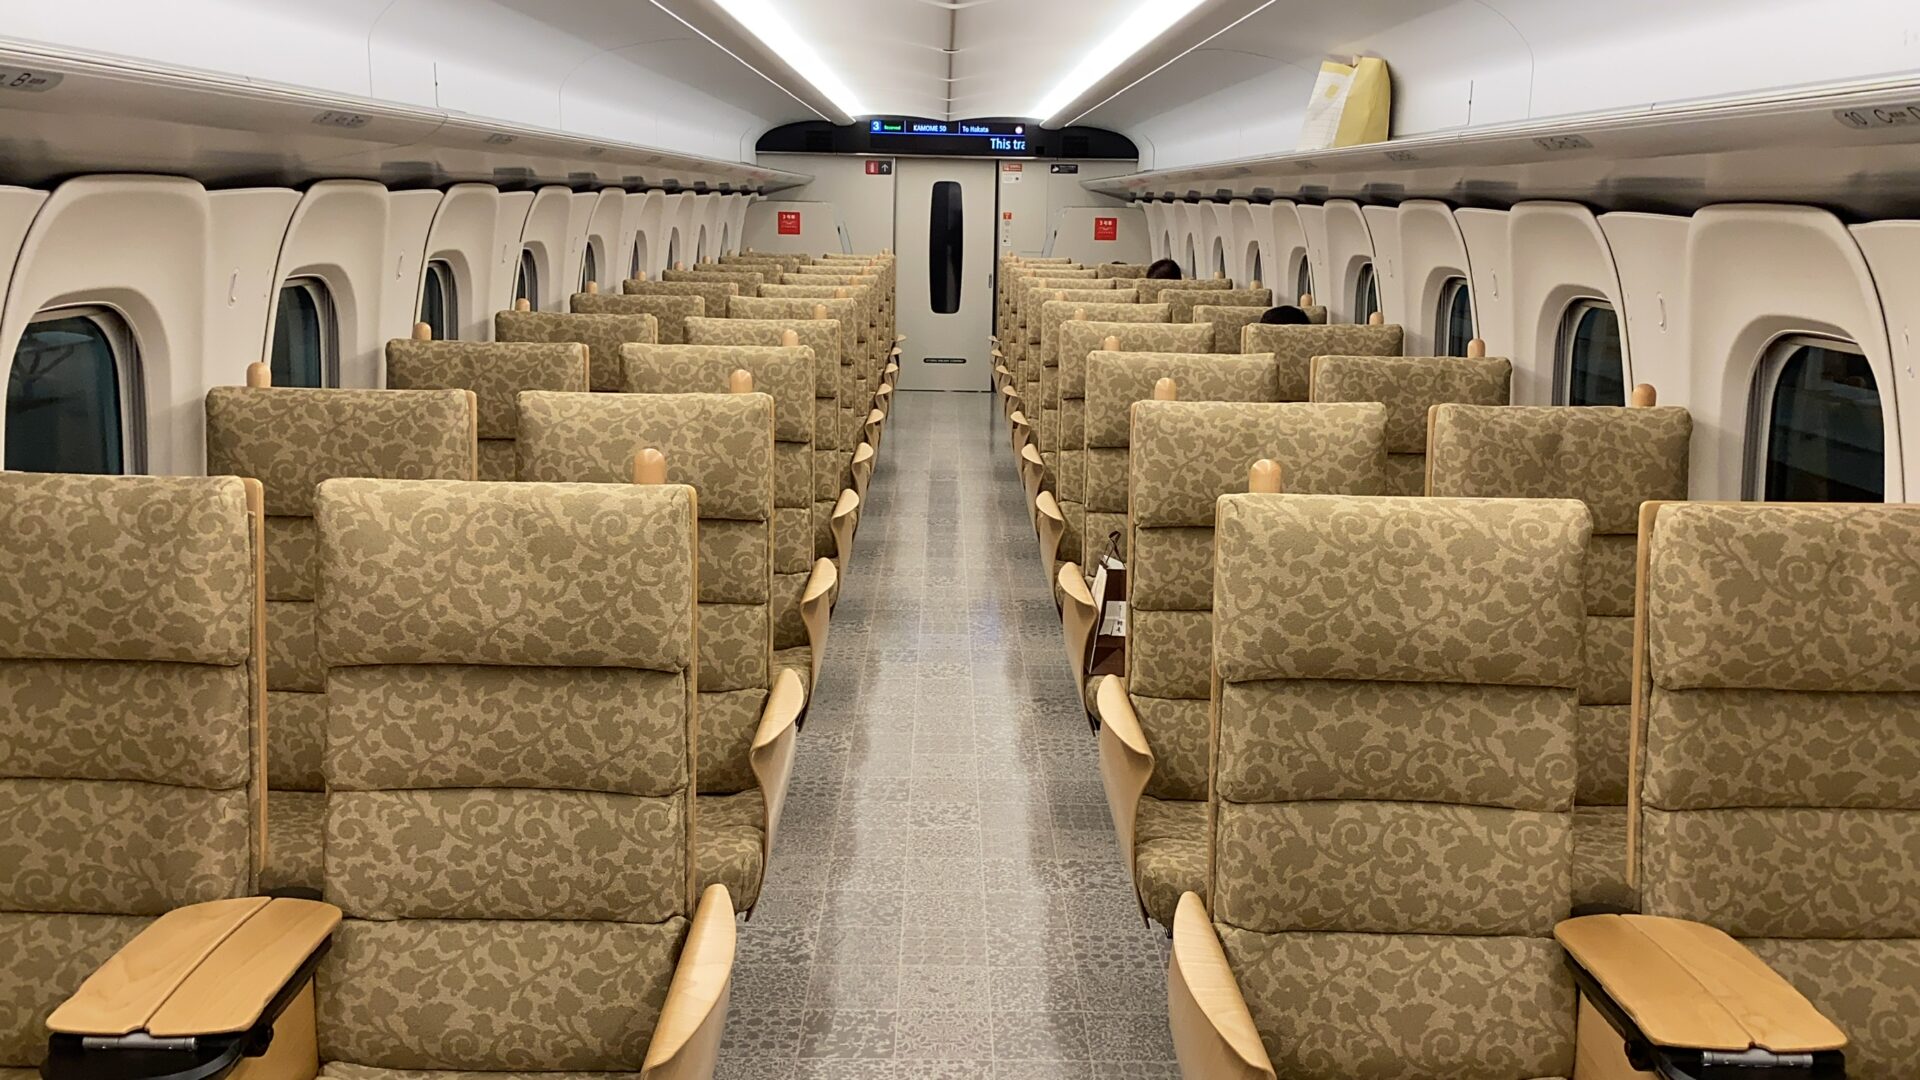 西九州新幹線 かもめN700S系 車内を徹底解説
普通車指定席は2＋2の配列 800系とほぼ同一座席